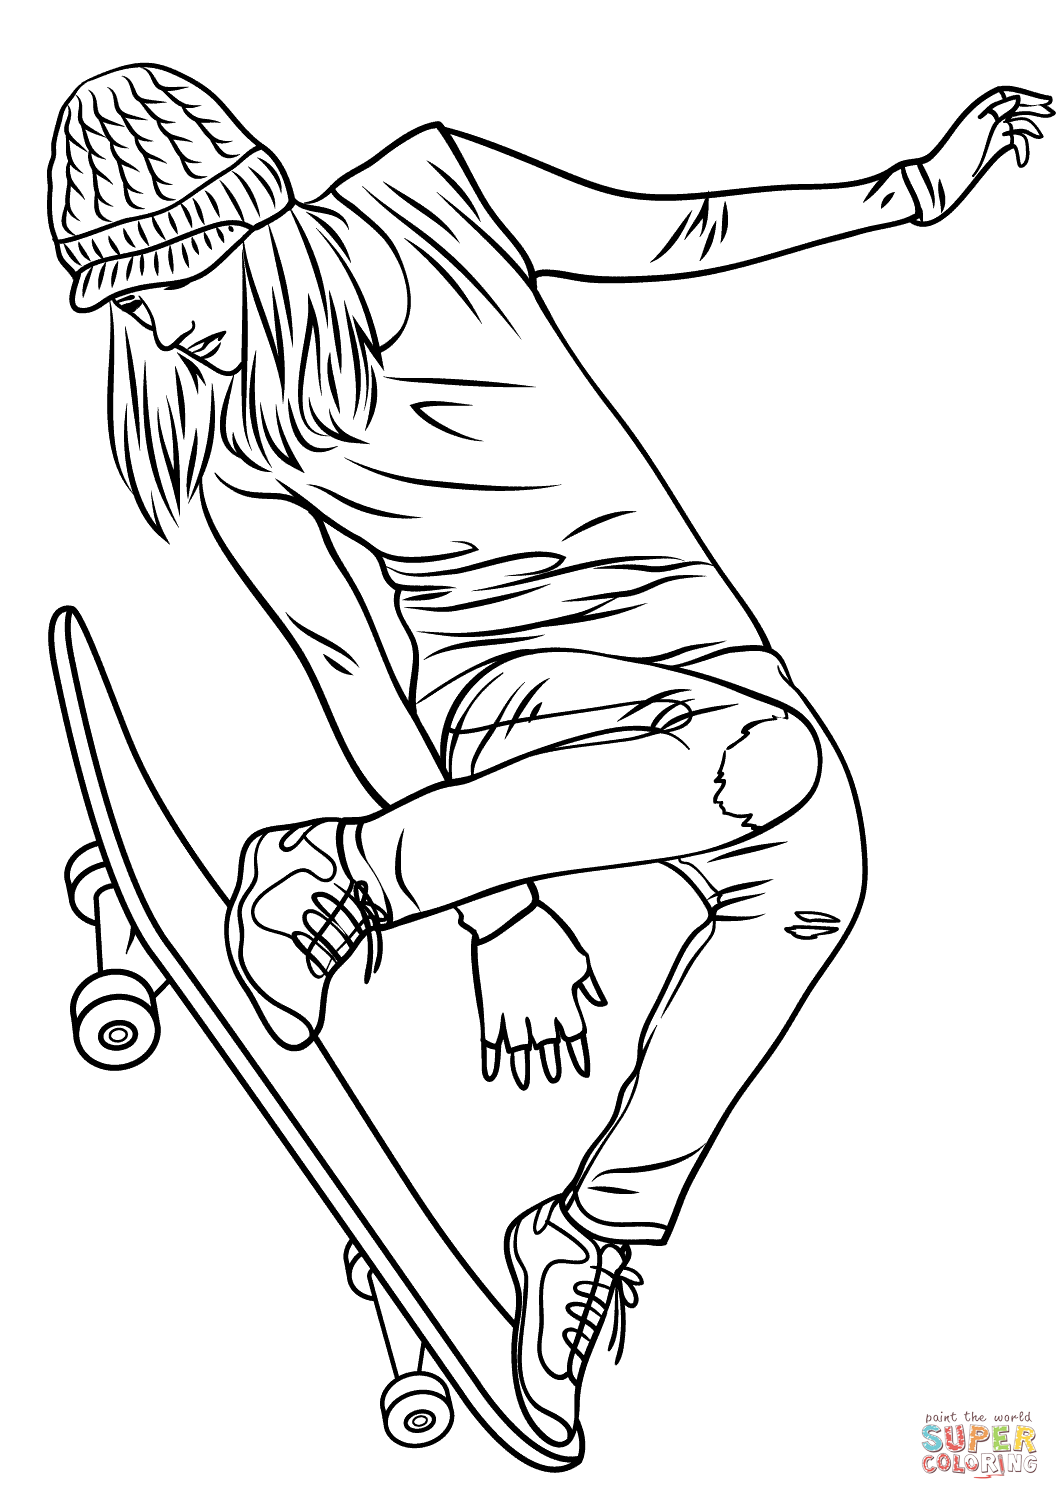 Das bett machen verweigerer rand skateboard coloring deck dokumentieren stabil